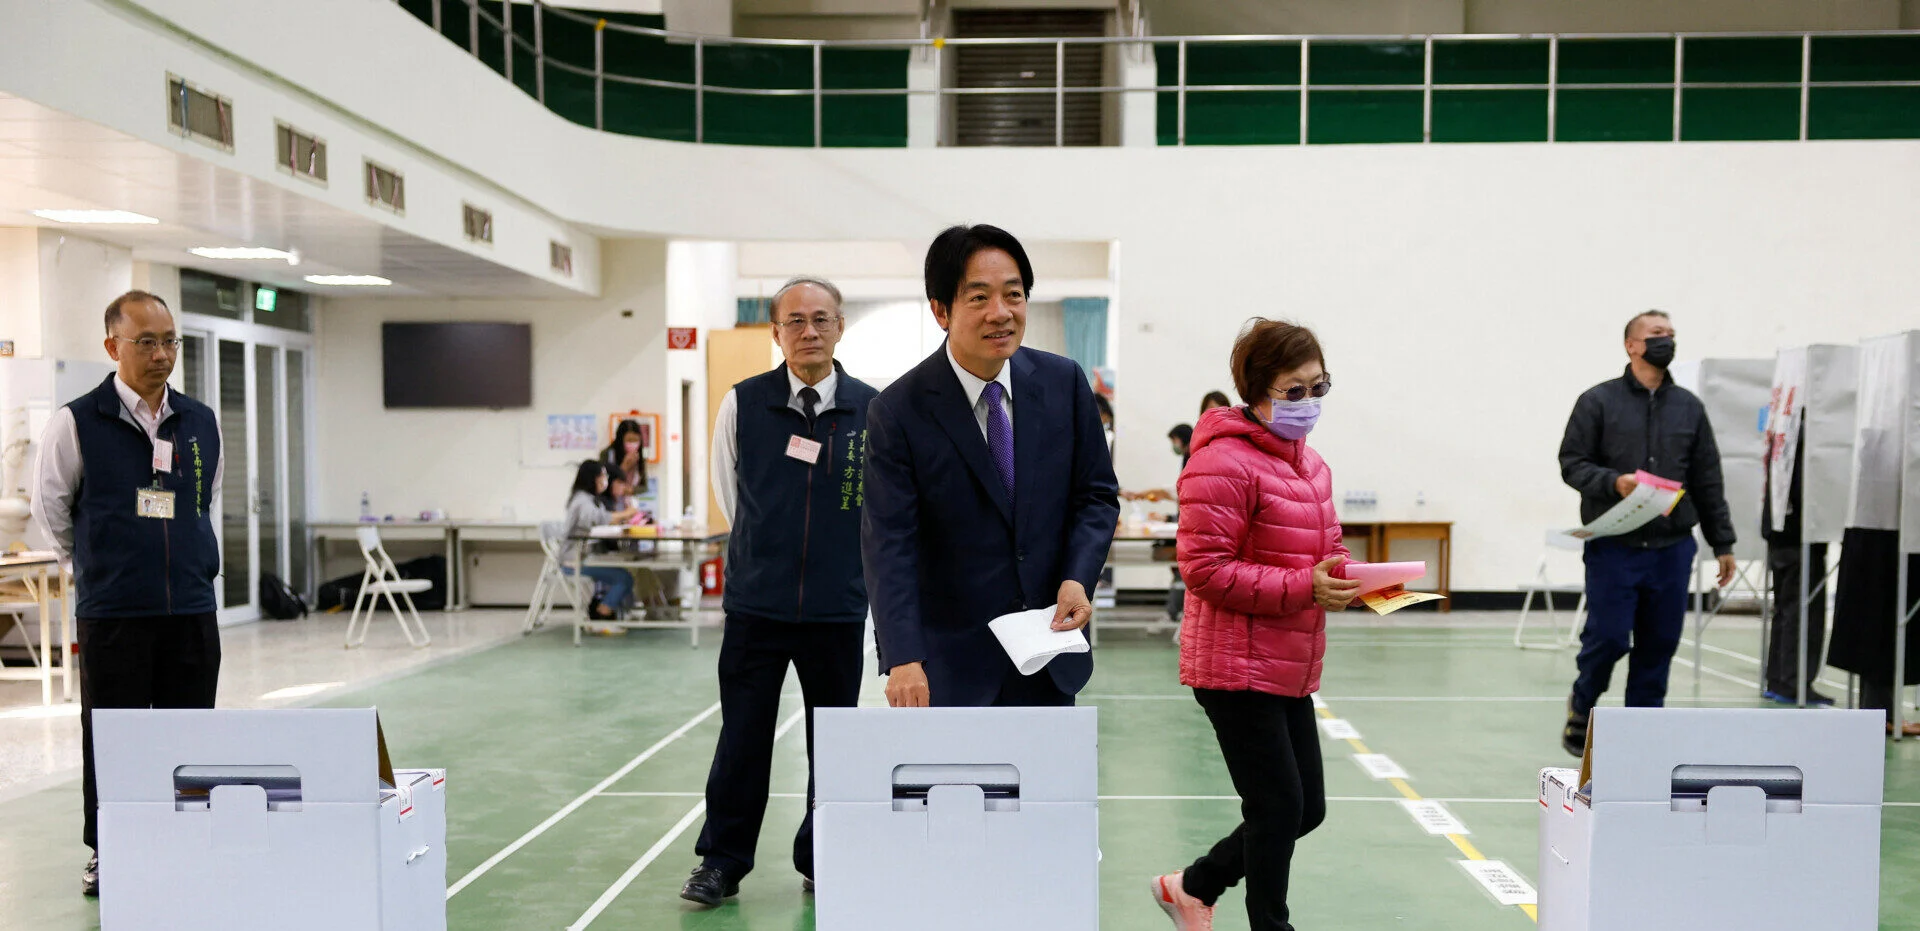 Εκλογές στην Ταϊβάν: Κόβει το νήμα ο υποψήφιος υπέρ της ανεξαρτησίας- Το Πεκίνο τον βλέπει ως «υποκινητή του πολέμου»